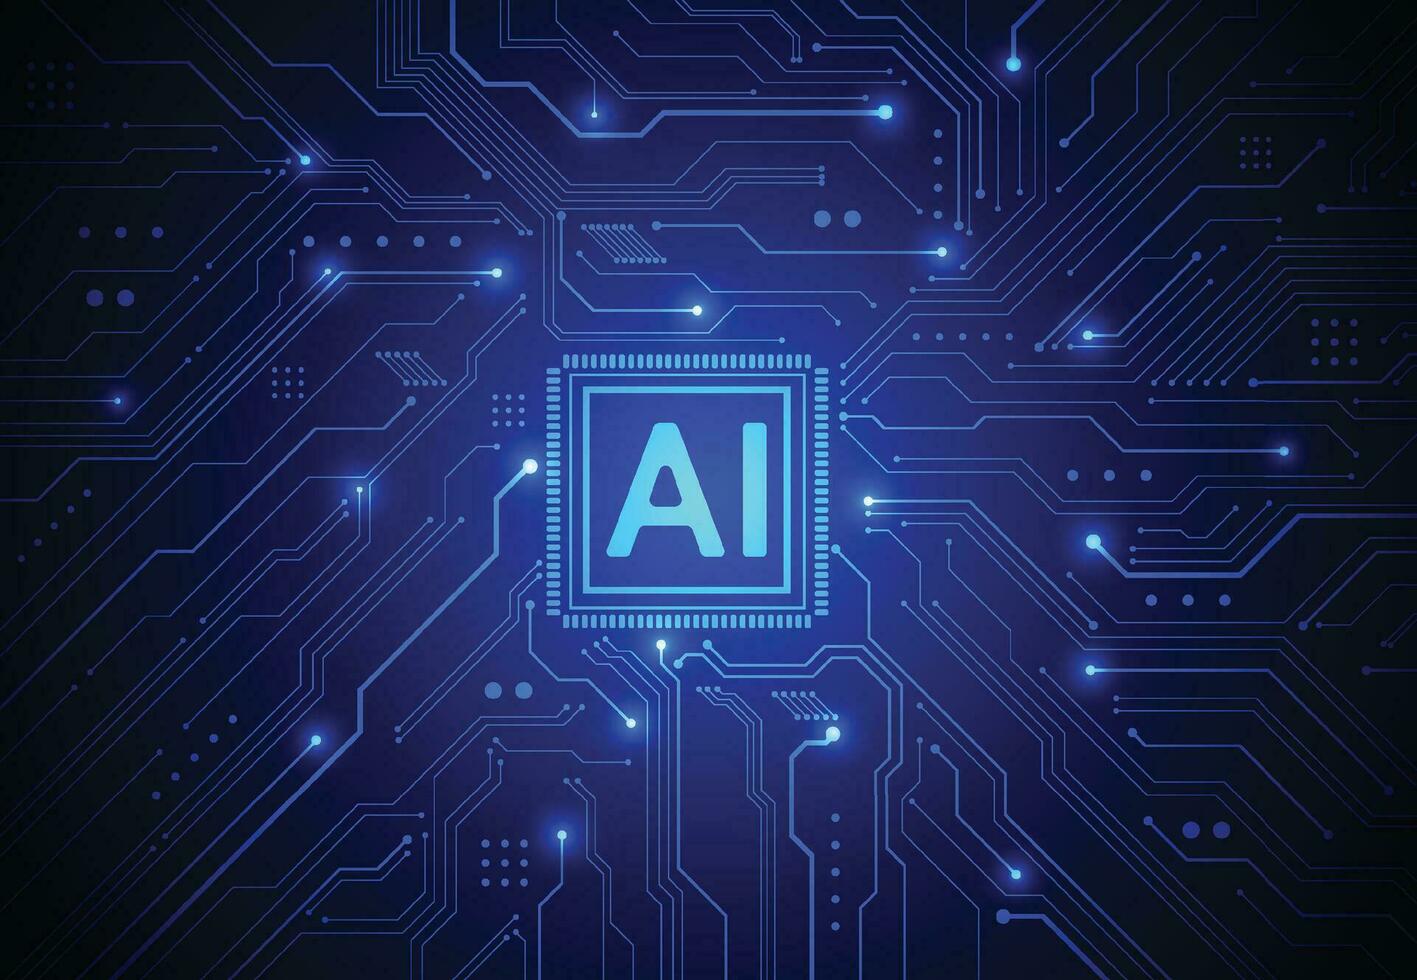 artificiell intelligens chipset på kretskort i futuristiska koncept teknik konstverk för webb, banner, kort, omslag. vektor illustration